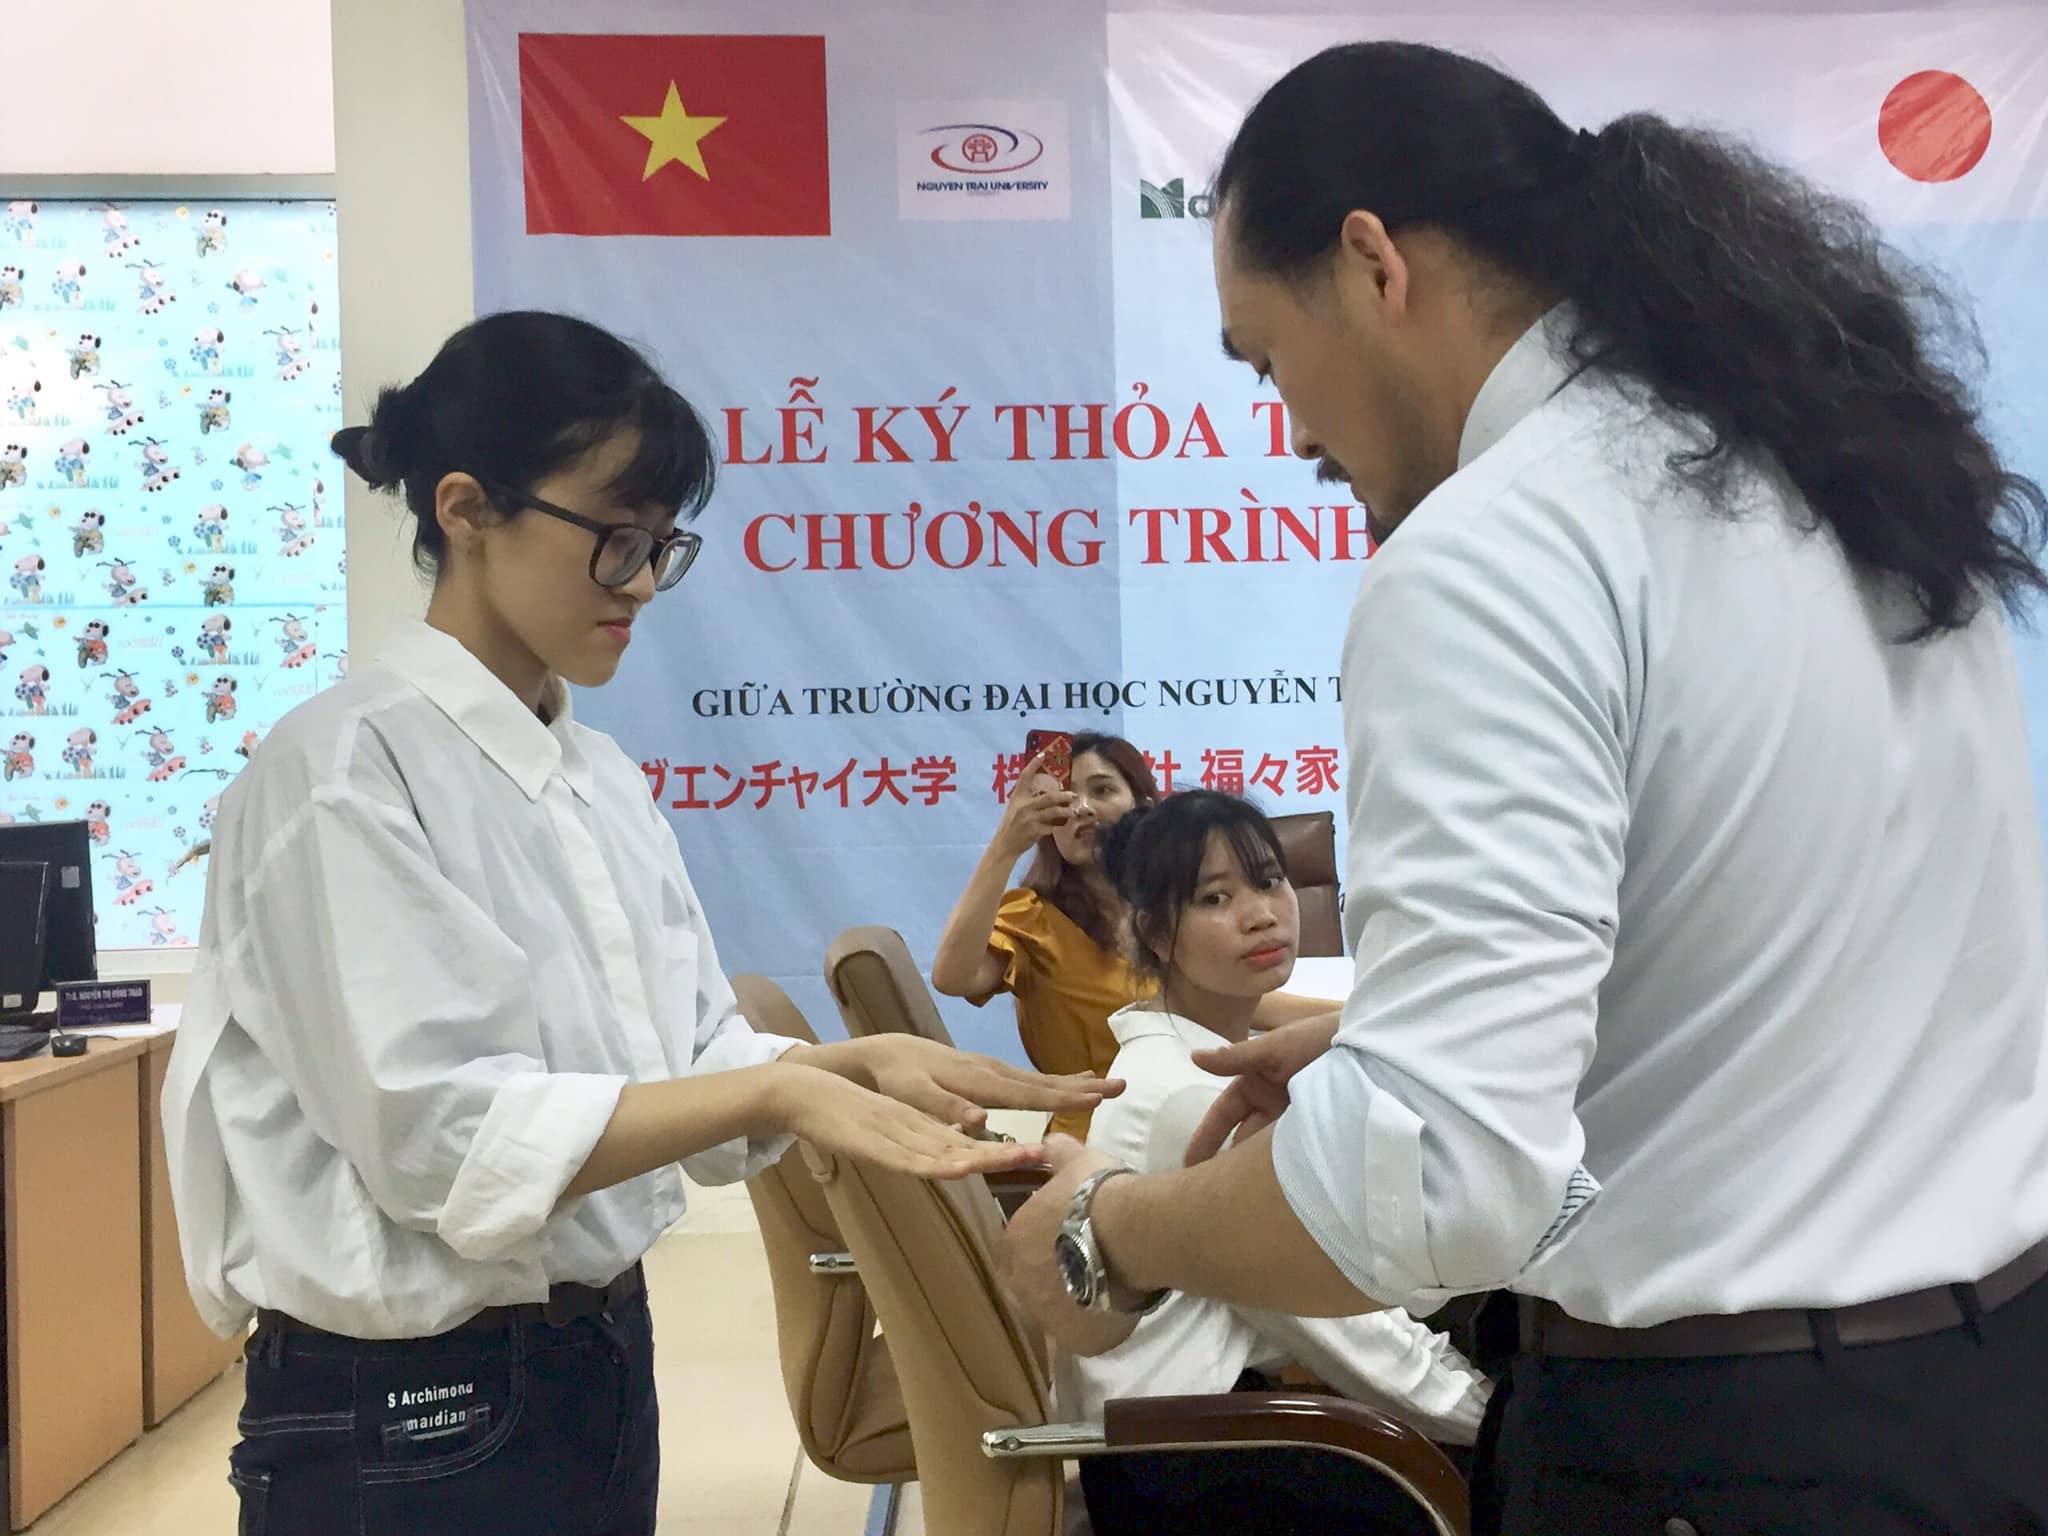 Đại học Nguyễn Trãi cùng Tập đoàn FUKUFUKUYA Nhật Bản ký kết thoả thuận hợp tác